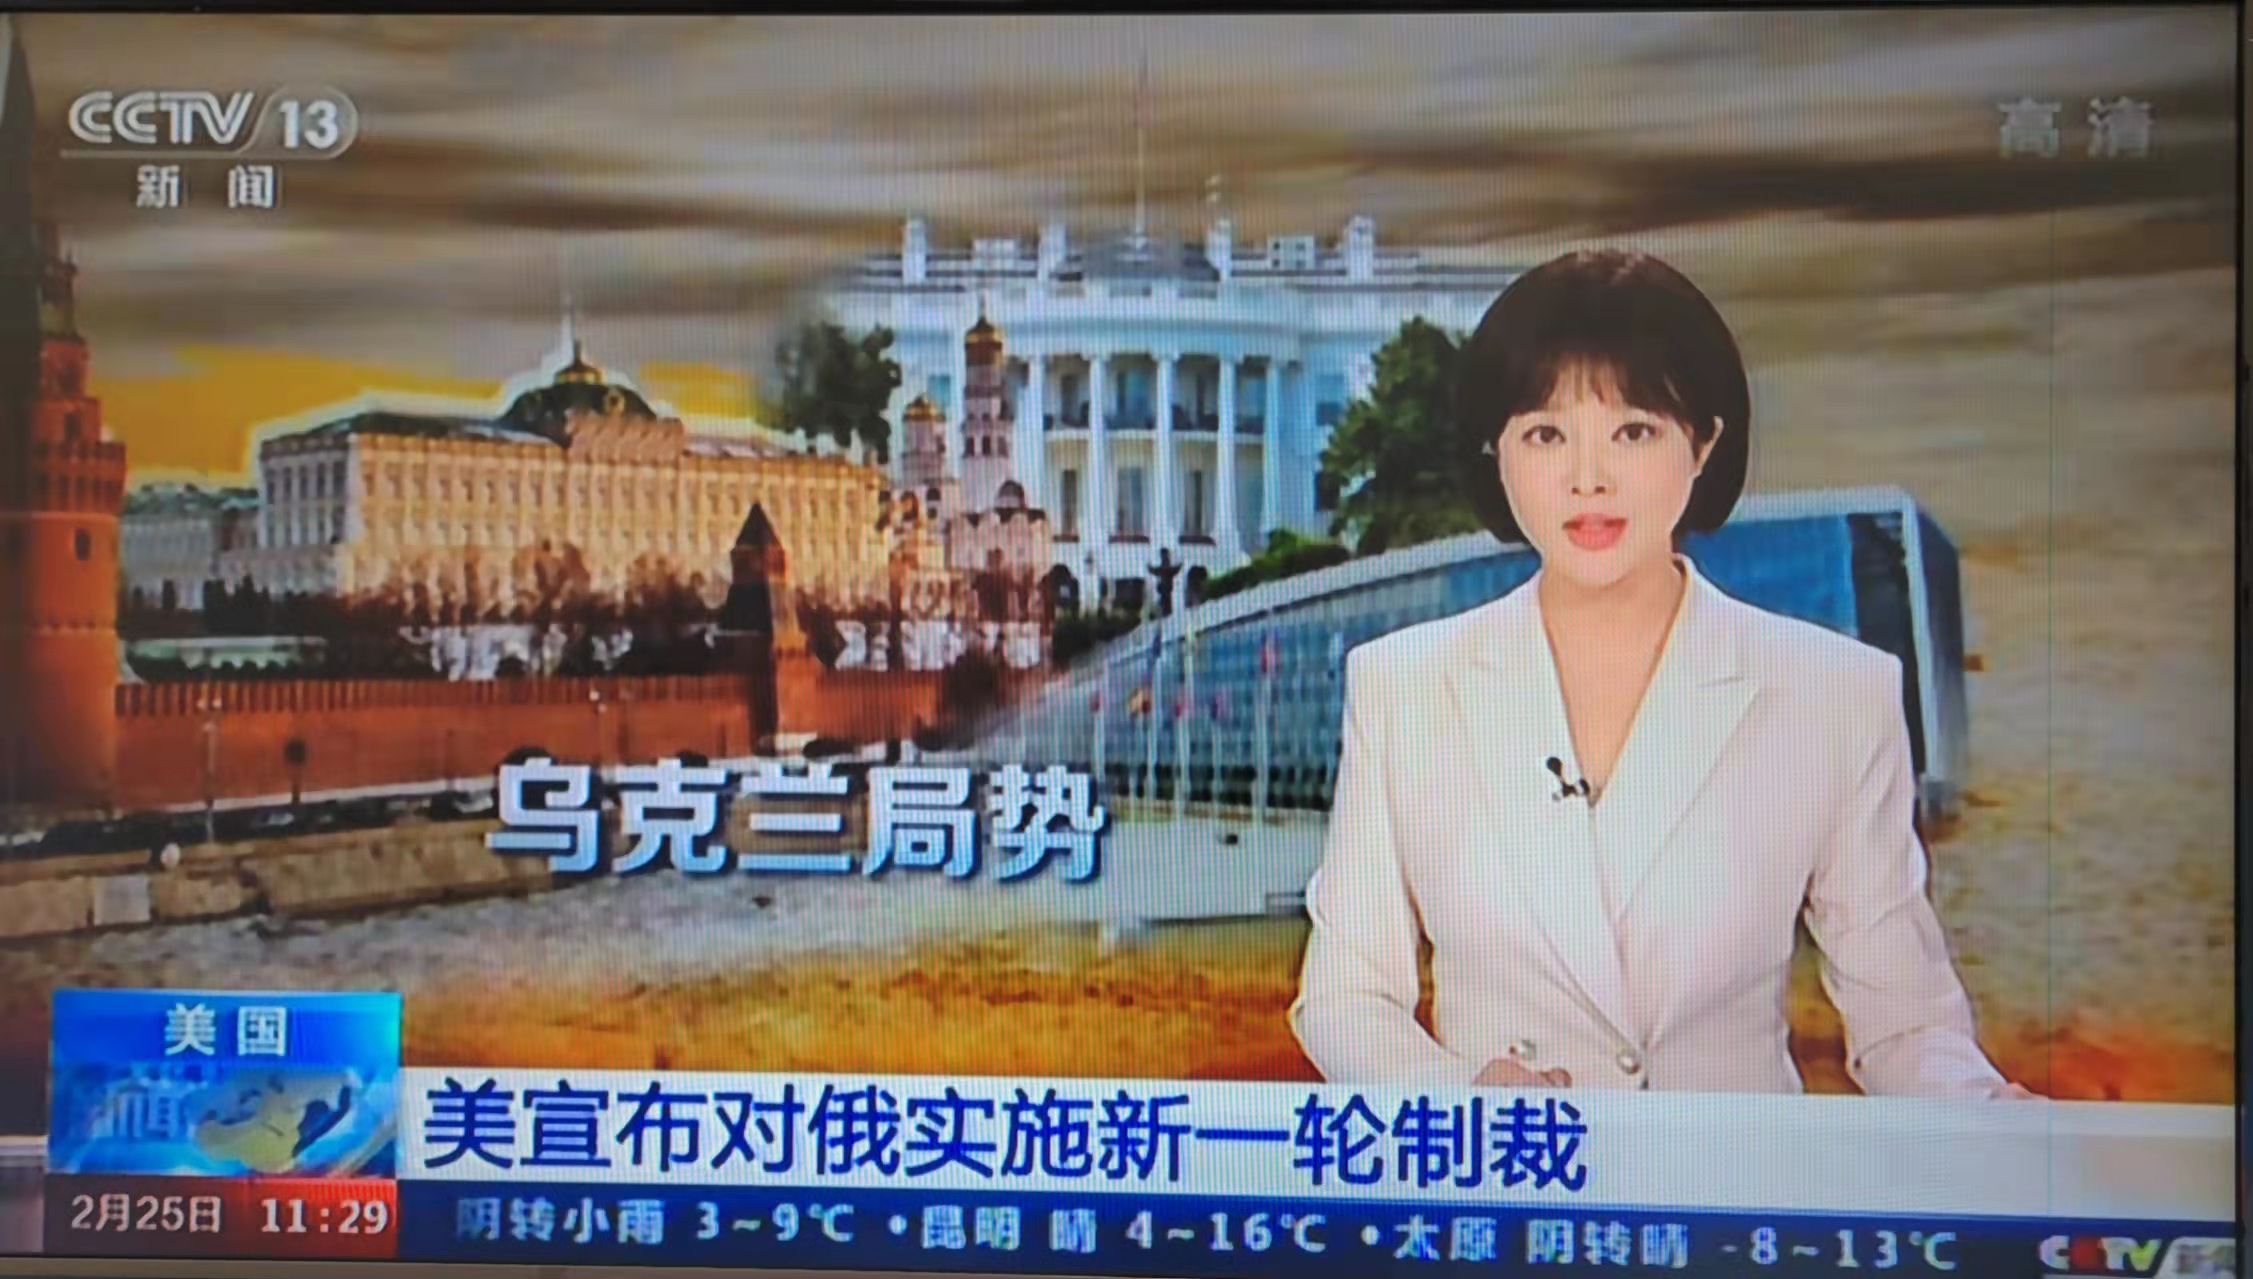 중국 관영 CCTV는 우크라이나 사태를 뉴스 채널 속보 등을 통해 비중있게 보도하고 있다.